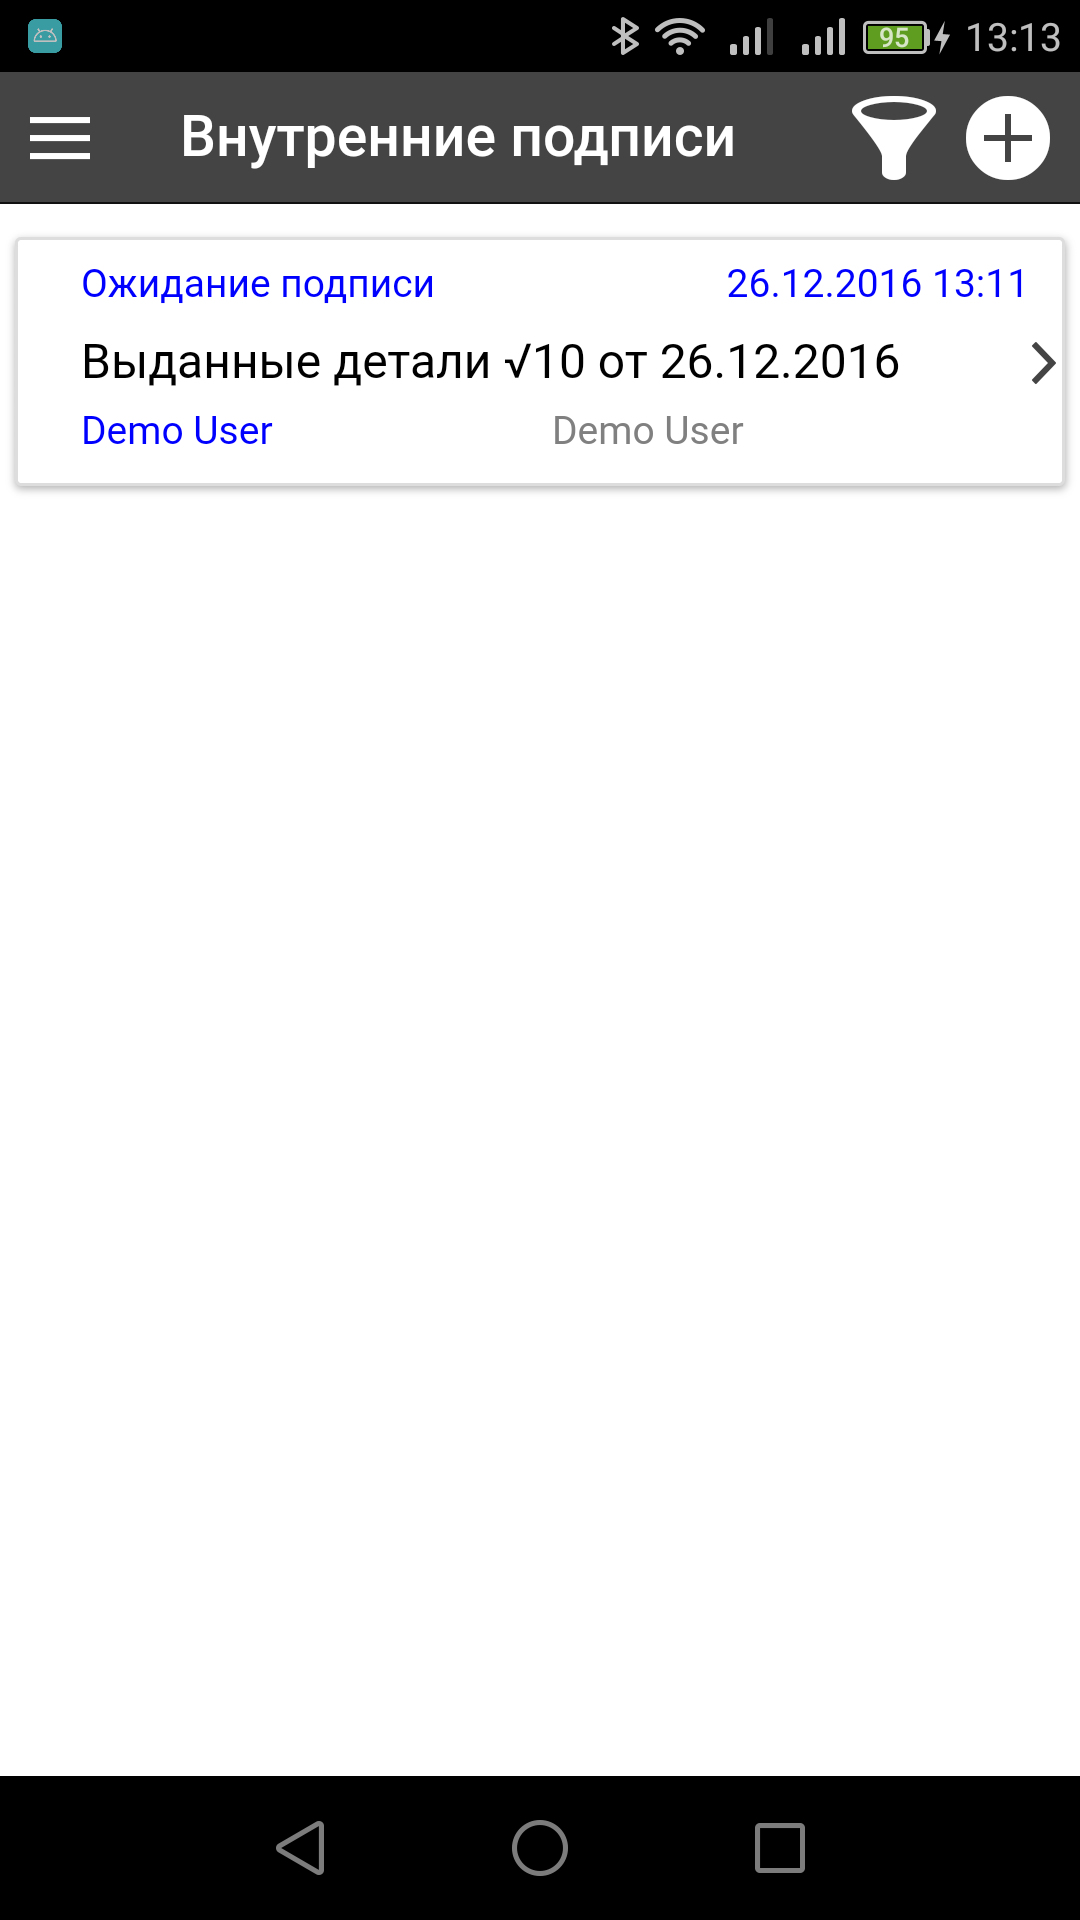 Android application Внутренняя подпись screenshort